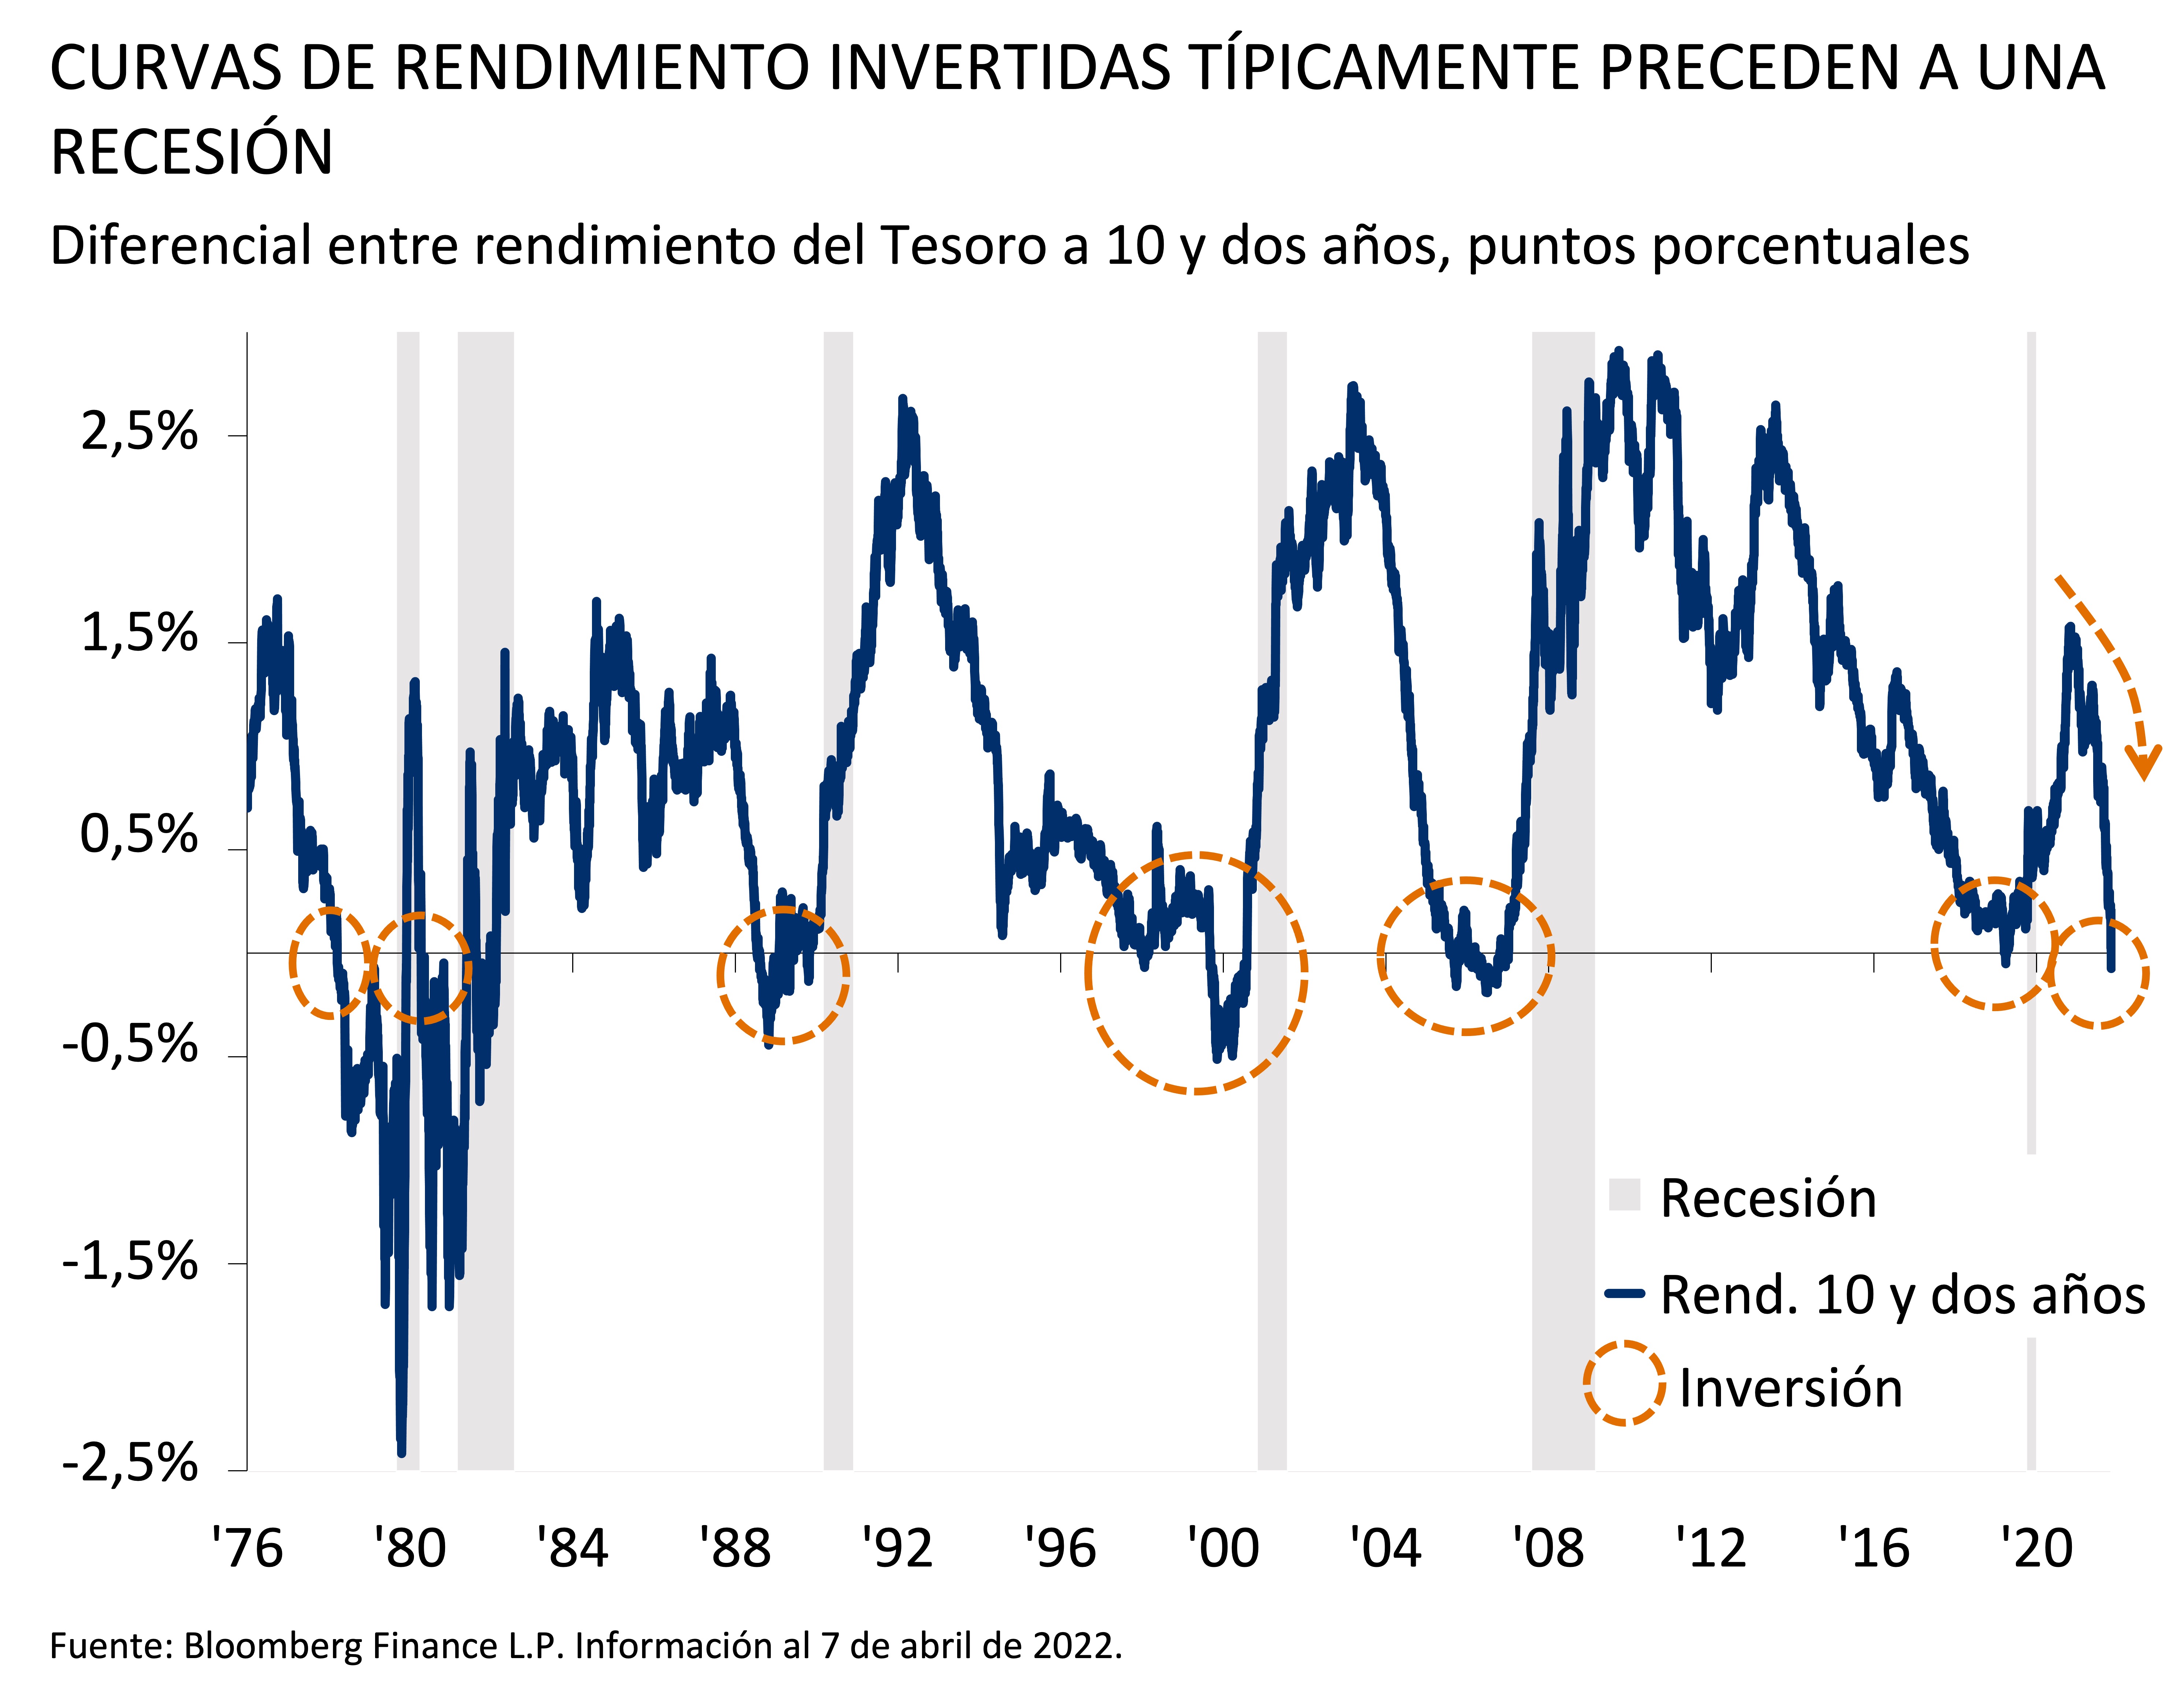 Curvas de rendimiento invertdas tipicamente preceden a una recesion